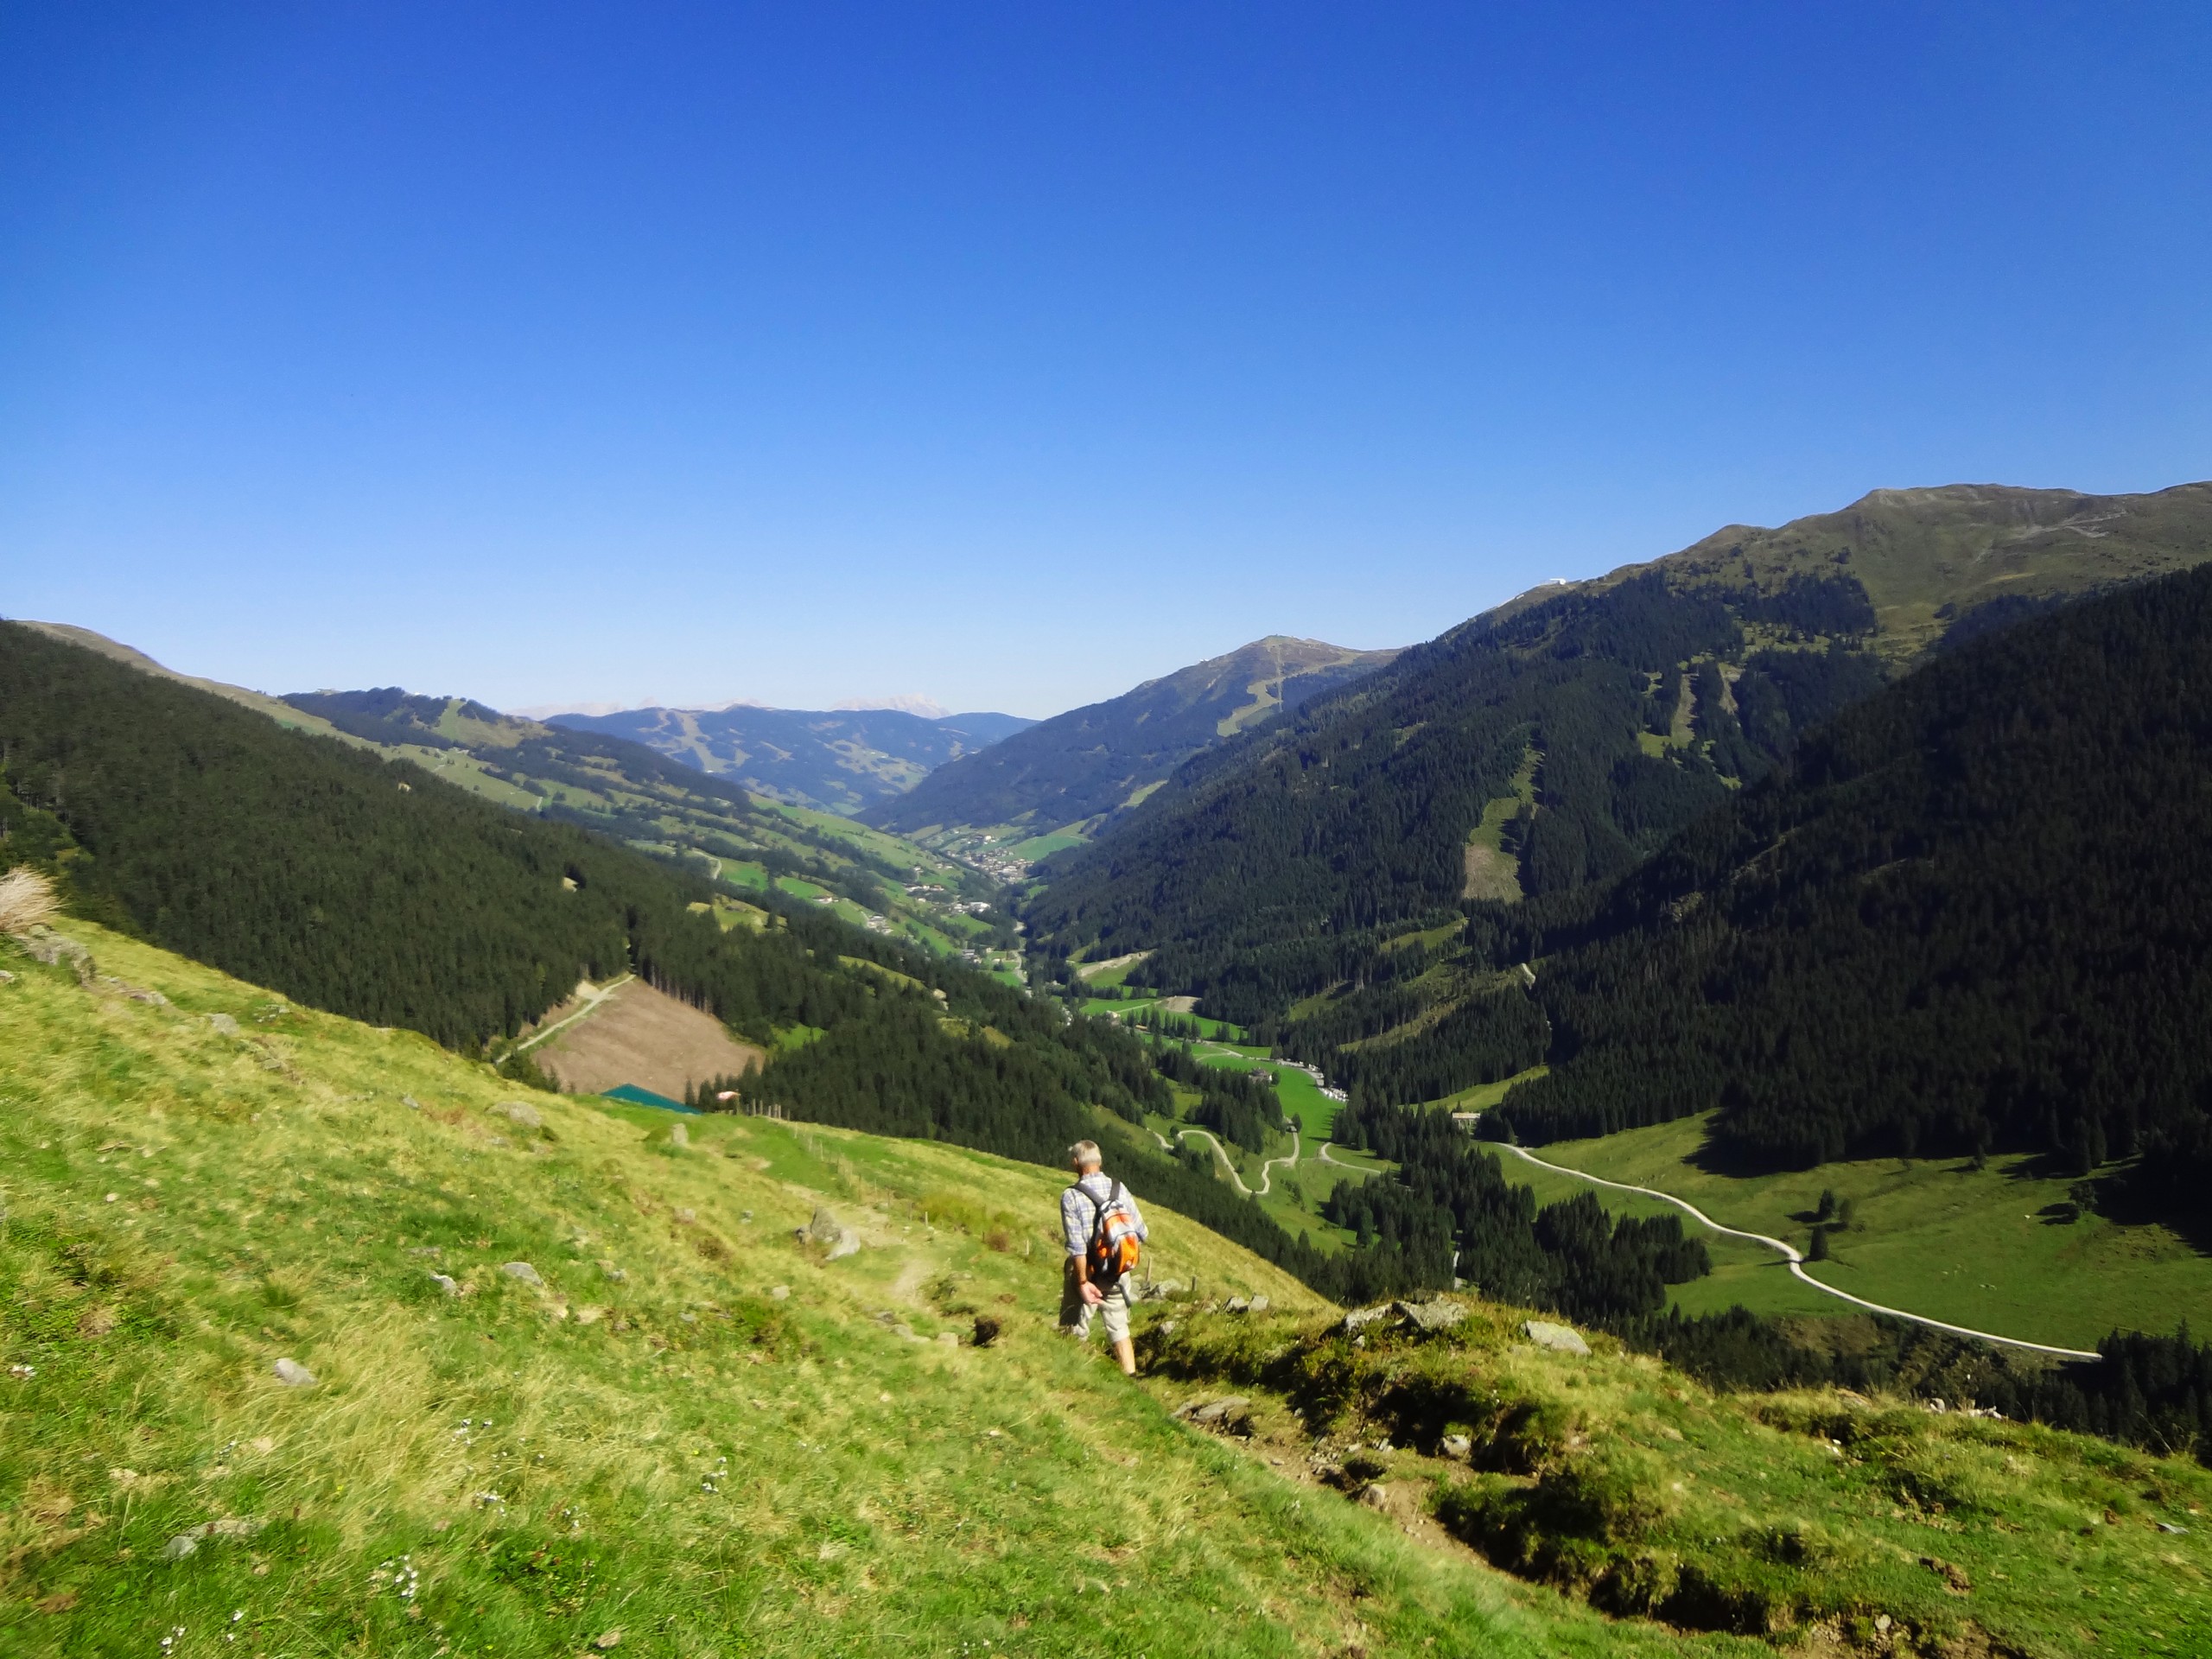 Hiker walking the green meadows in Austria